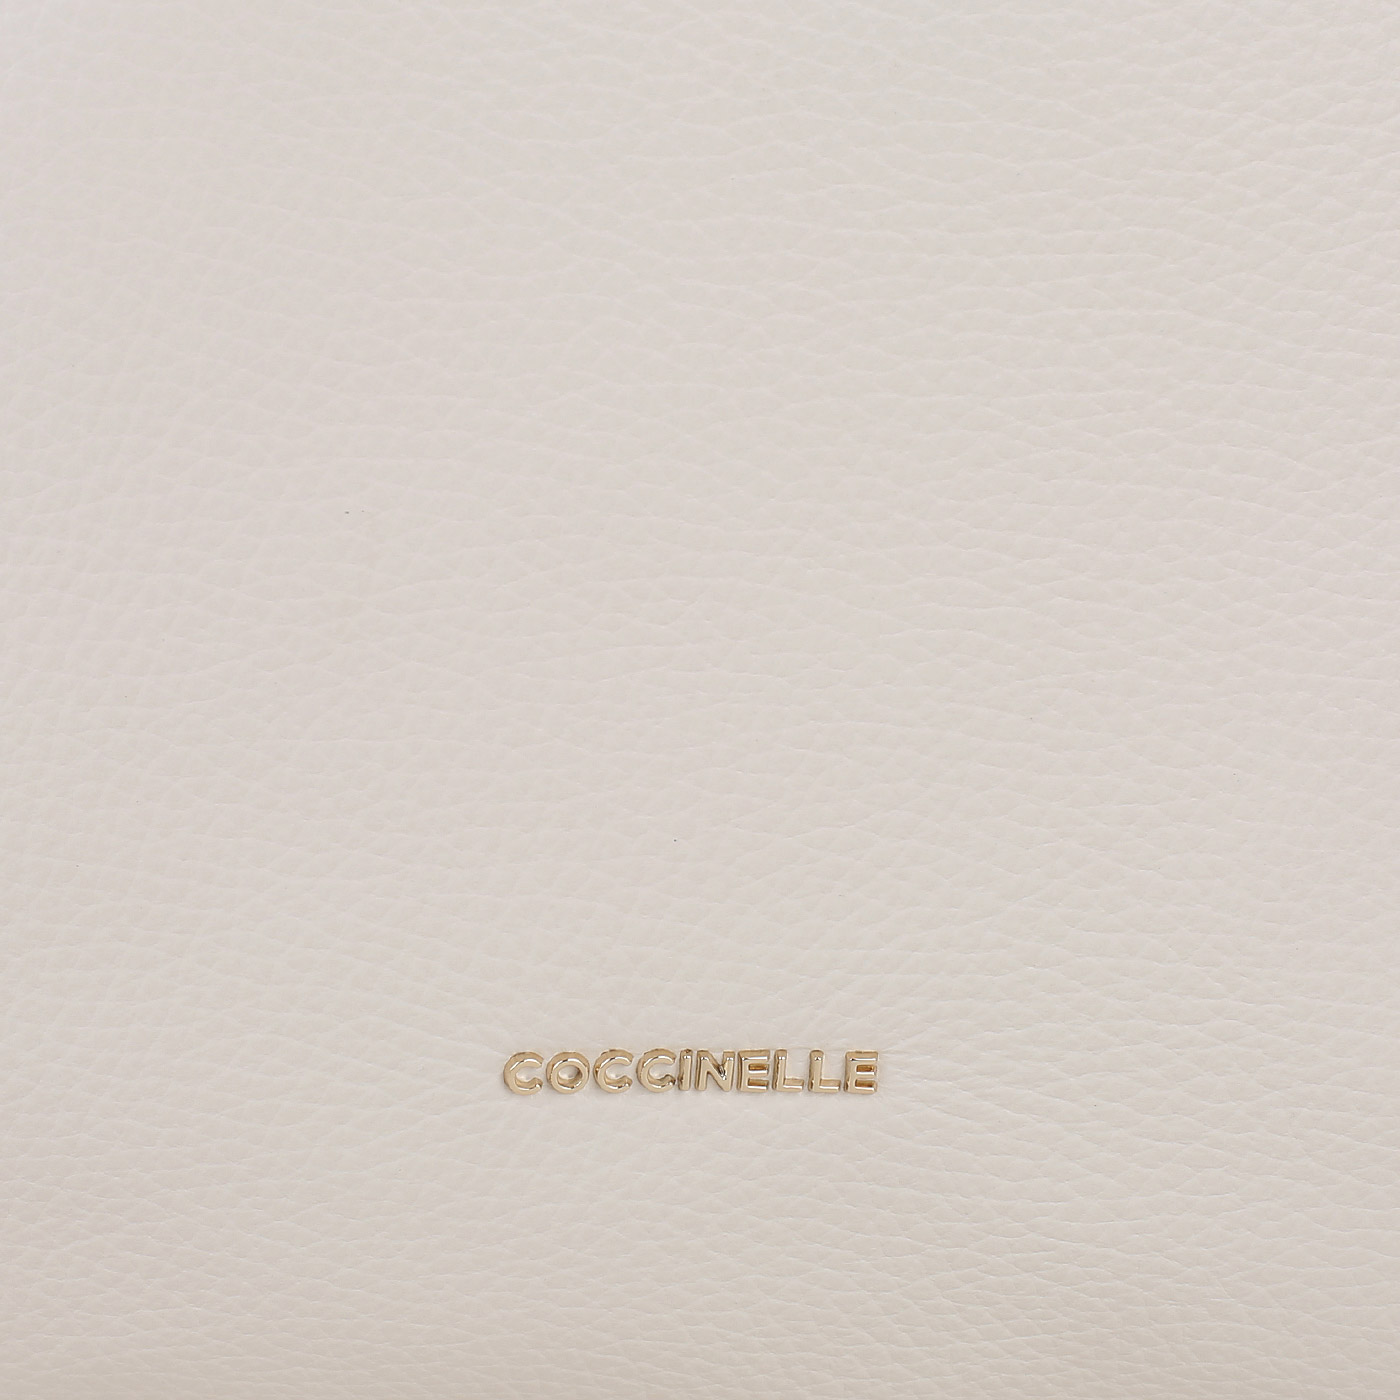 Кожаный рюкзак Coccinelle CoccinelleGleen